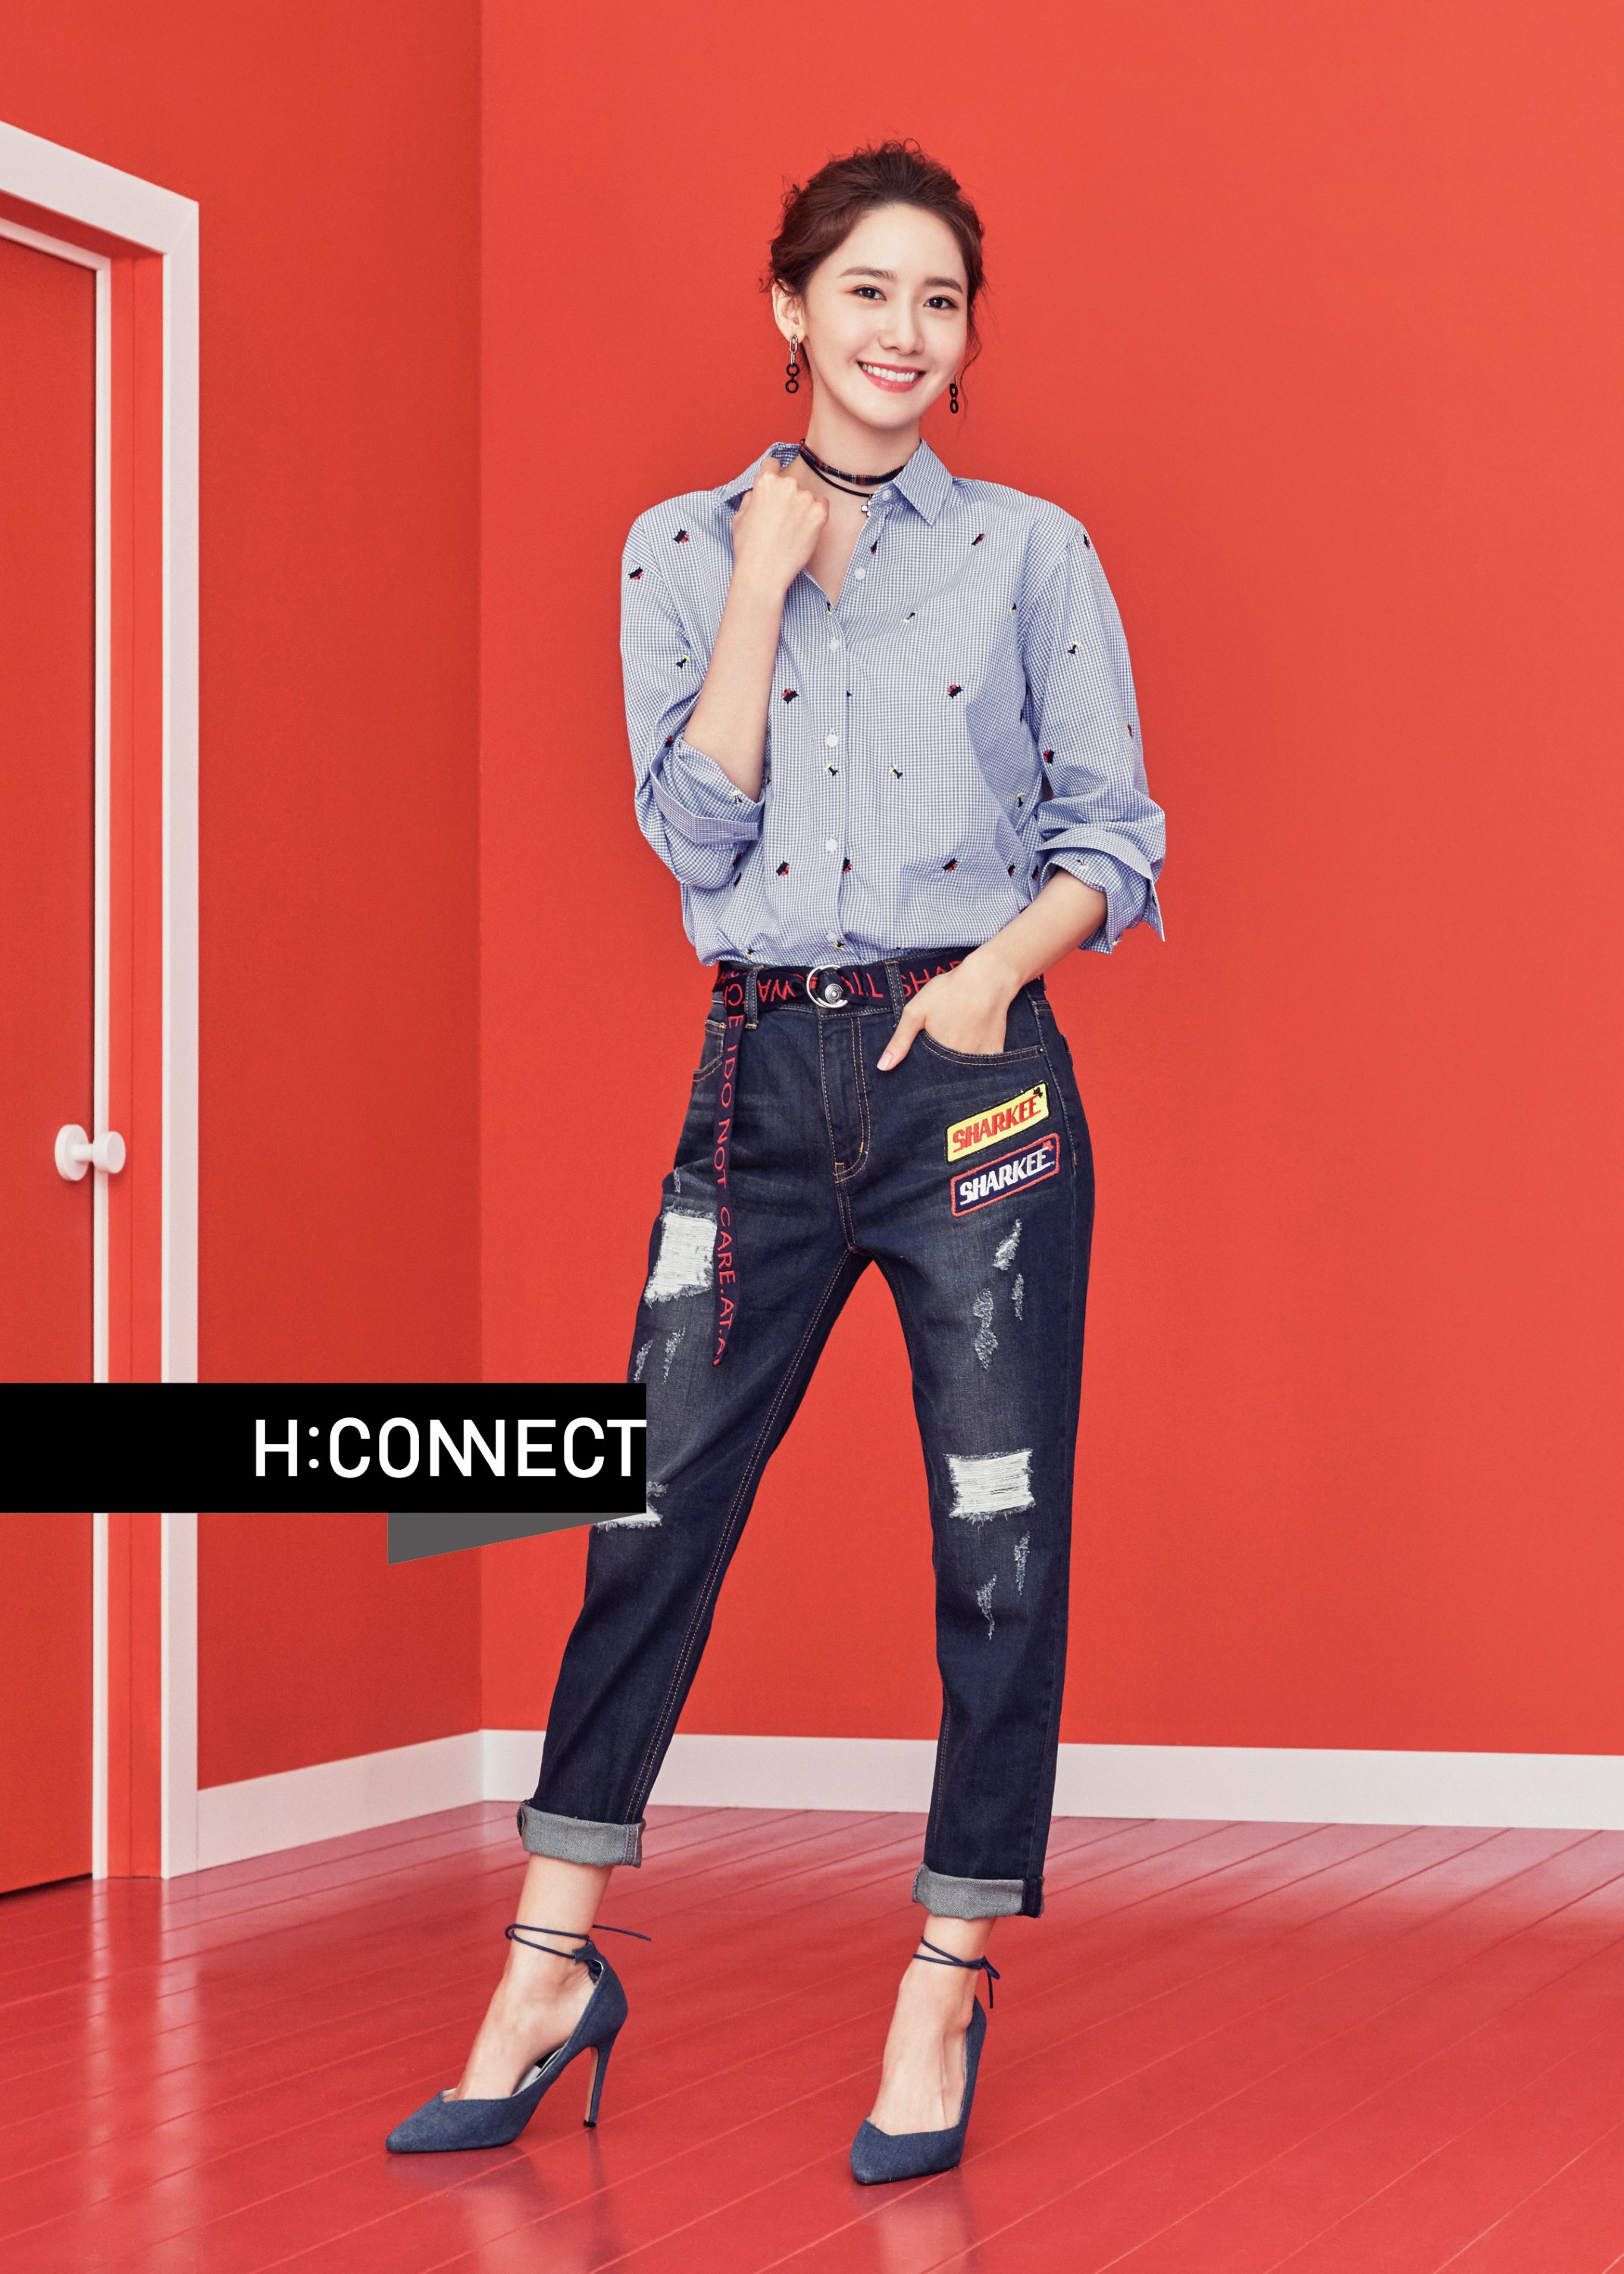 [OTHER][27-07-2015]YoonA trở thành người mẫu mới cho dòng thời trang "H:CONNECT" - Page 7 8zUo3G8Br3-3000x3000